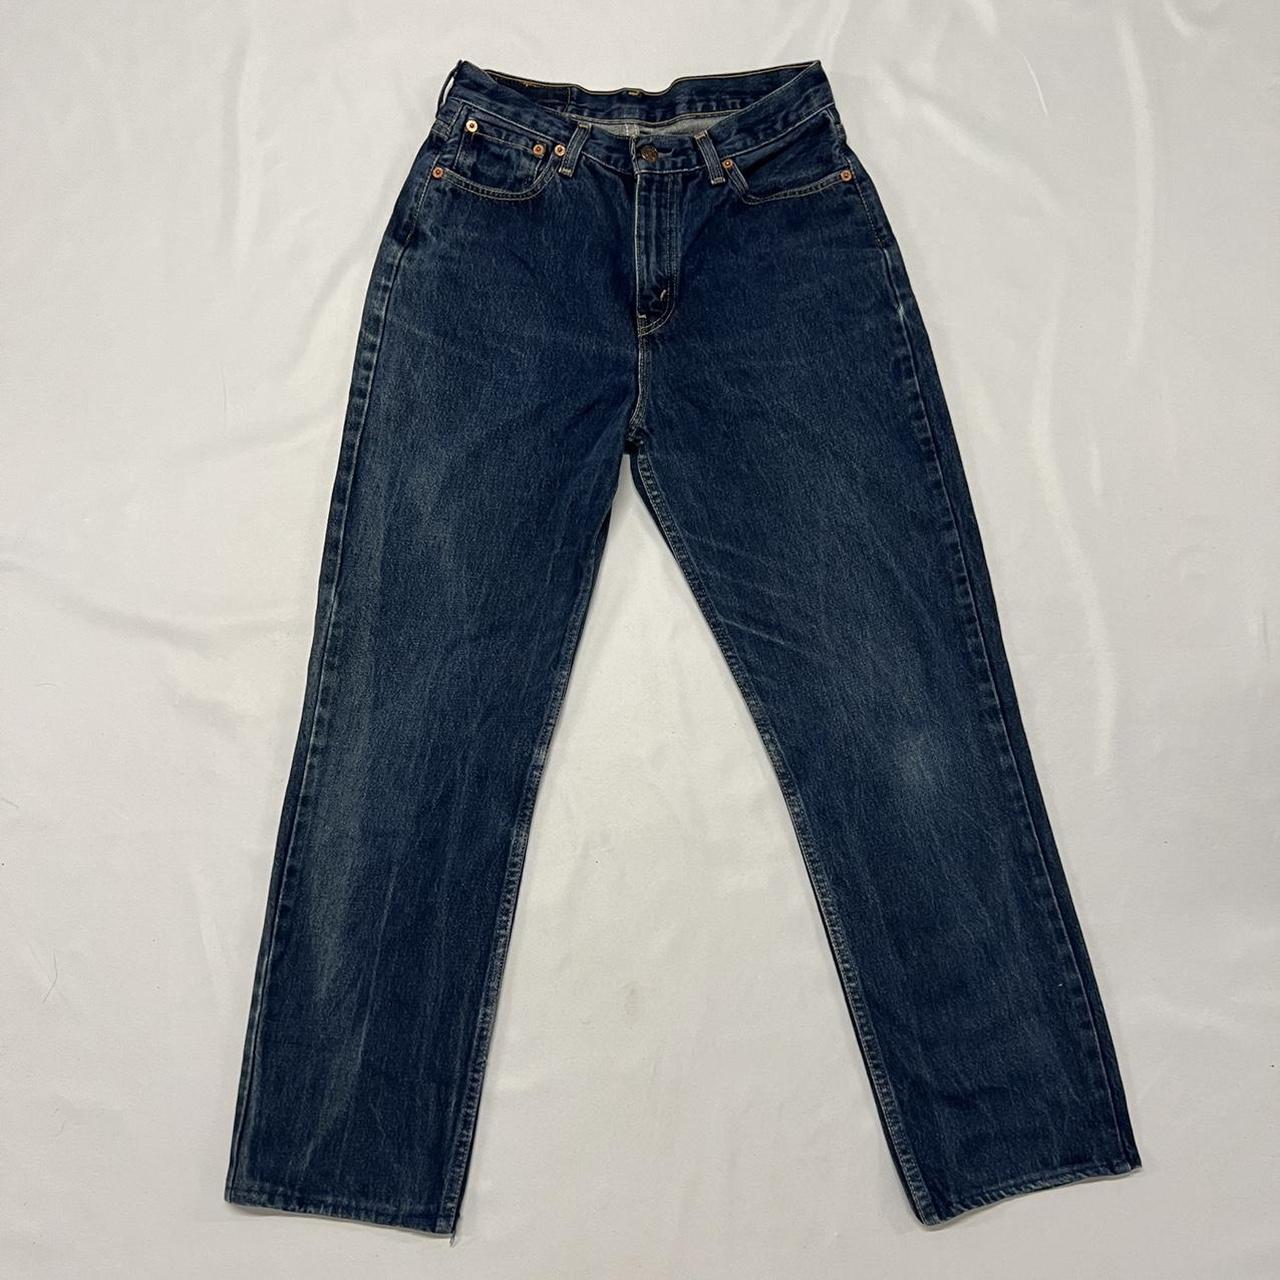 blue denim Levi jeans, style 583 W31 L34 little... - Depop